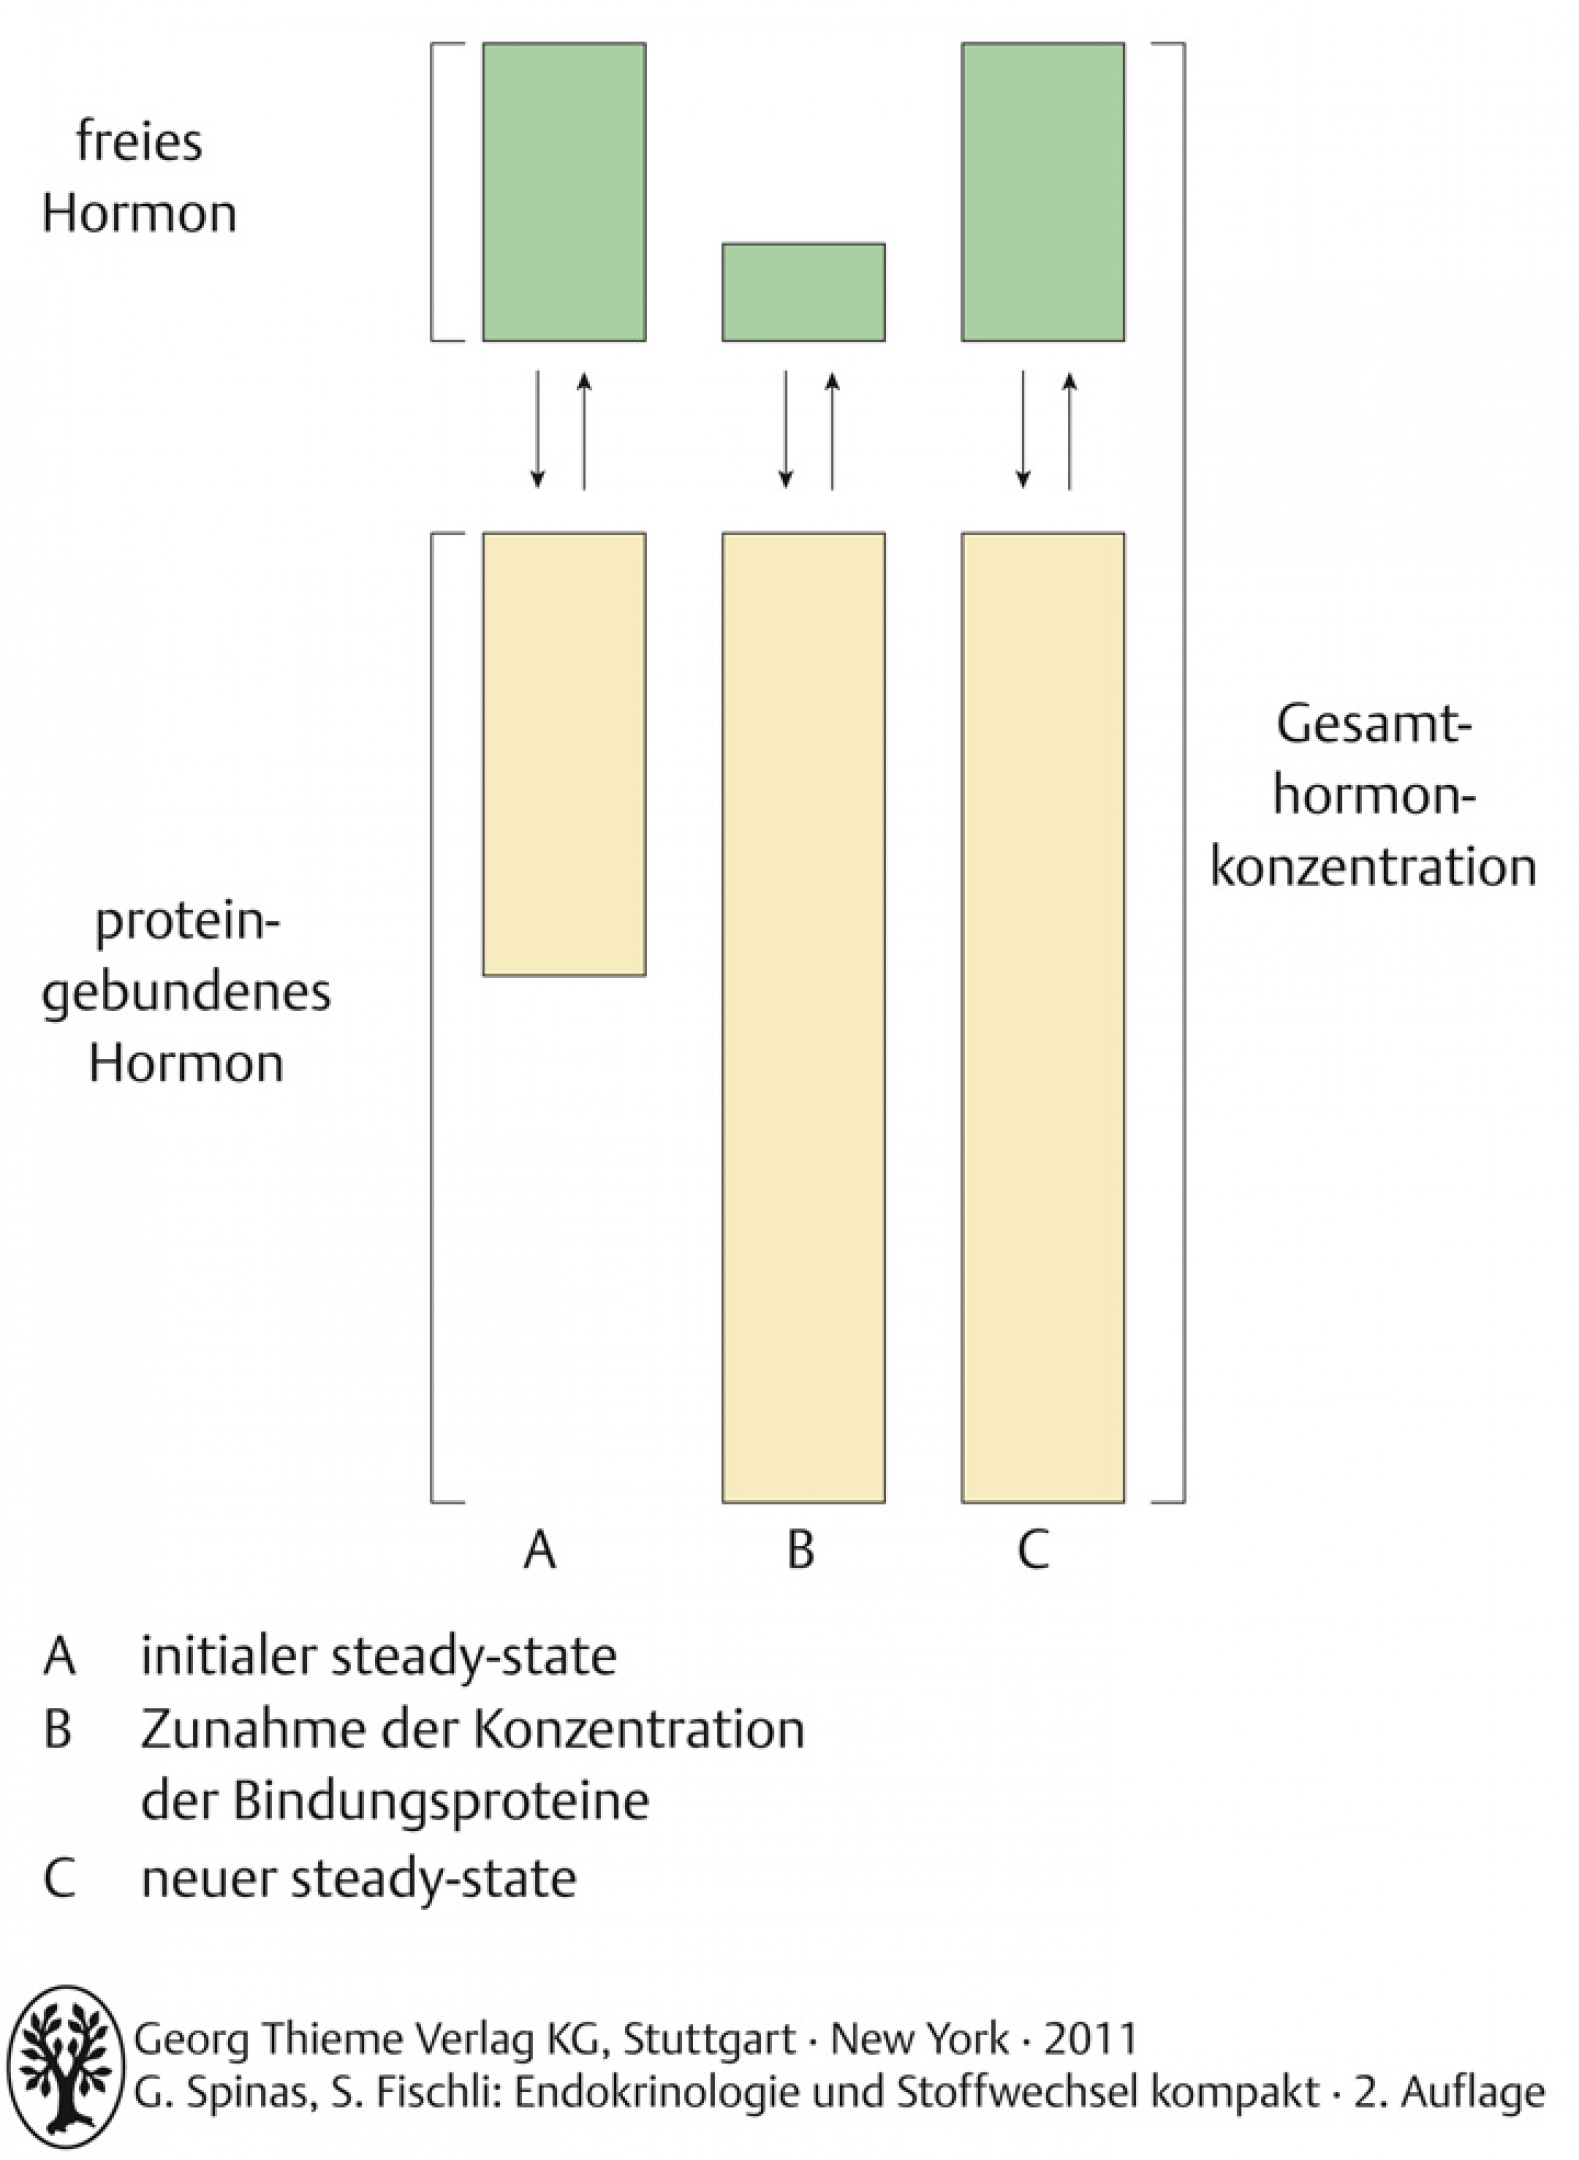 Gleichgewicht zwischen proteingebundenem Hormon und freier Hormonkonzentration